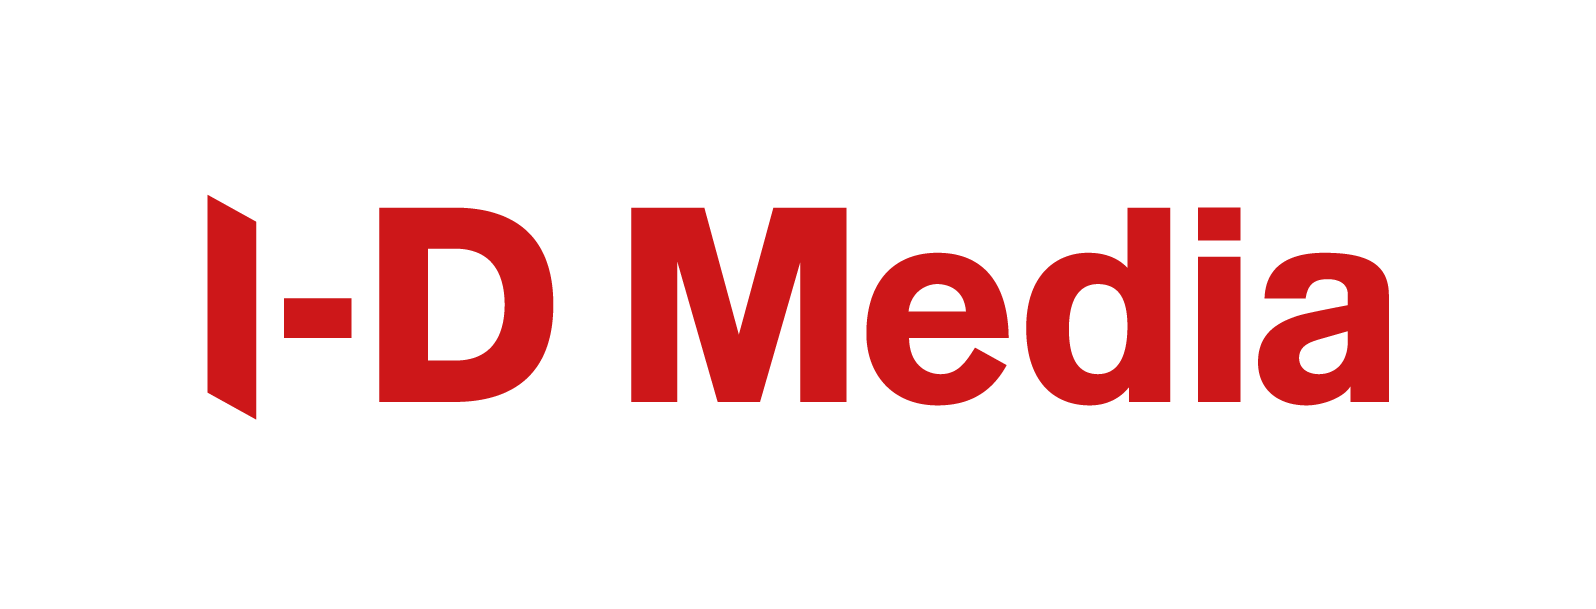 I-D-Media_2018_wortmarke-red